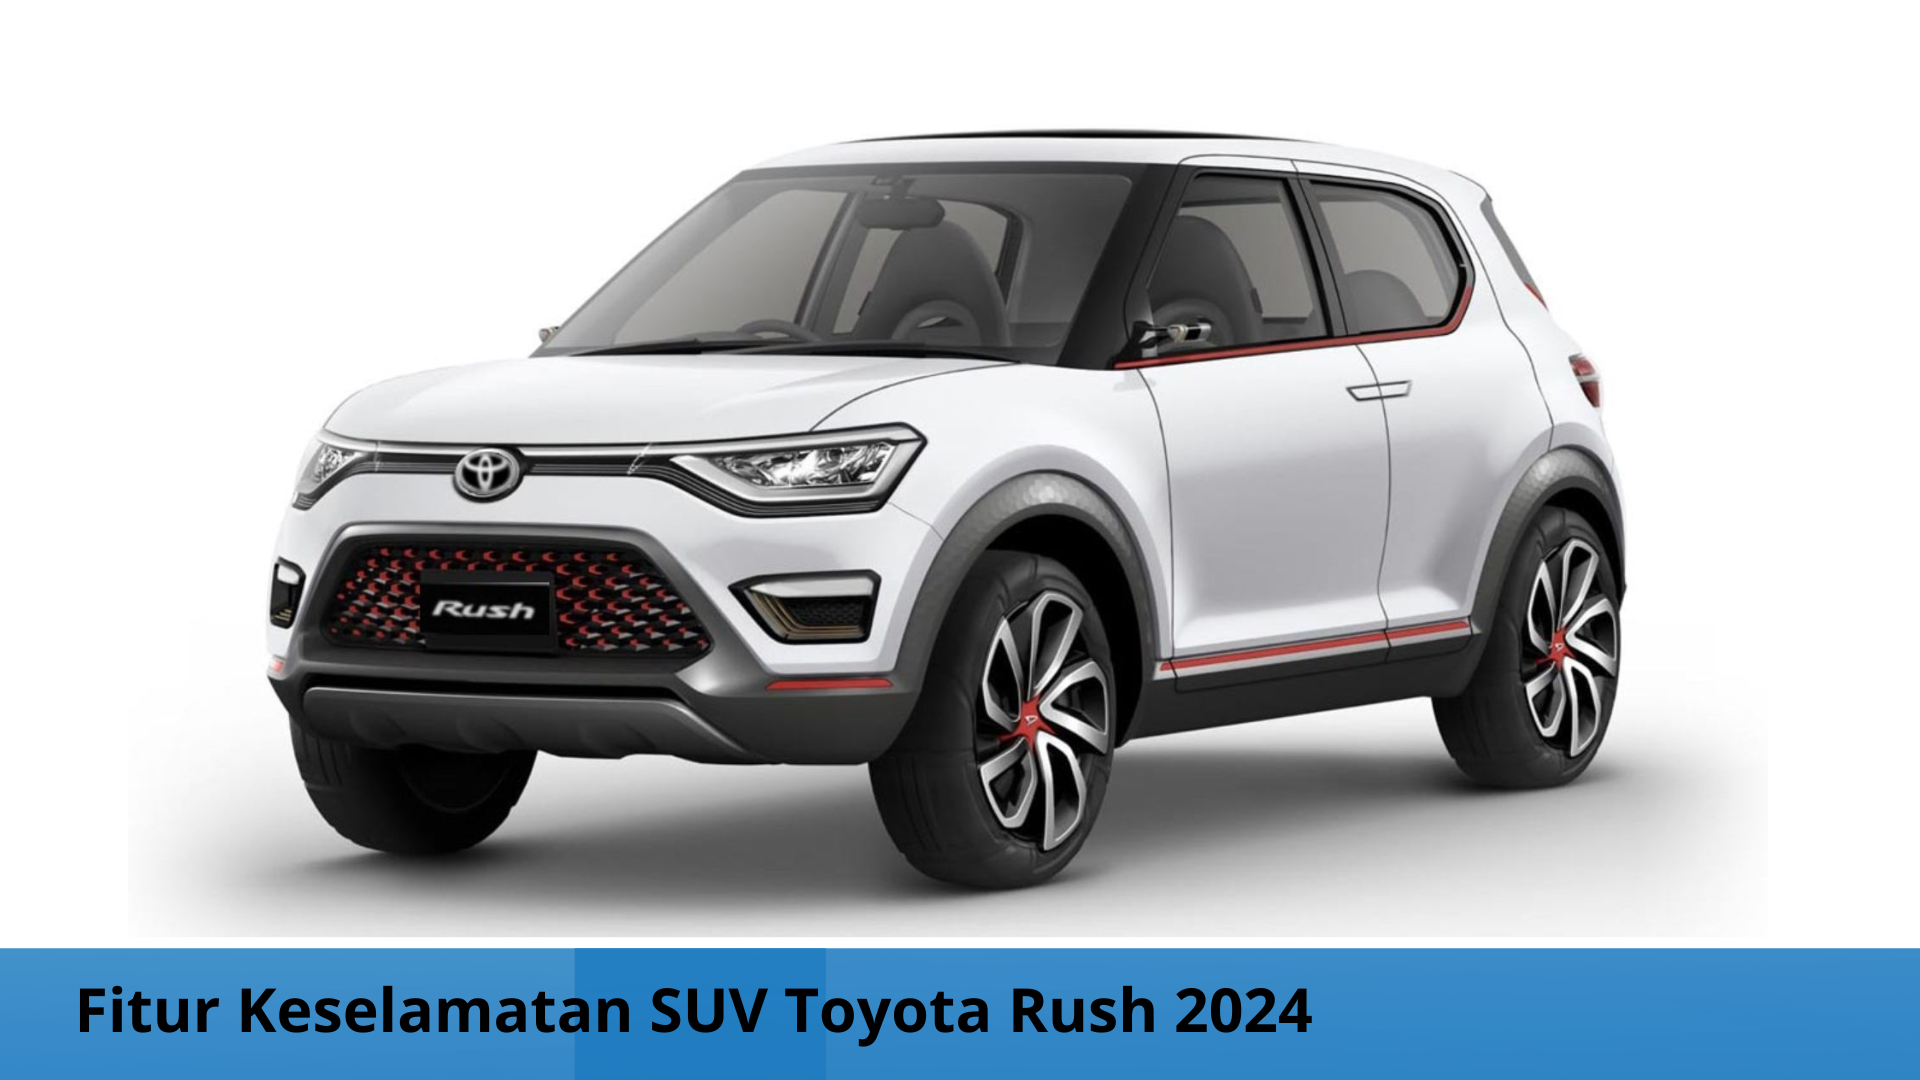 Cocok untuk Perjalanan Mudik, SUV Toyota Rush 2024 Punya Ragam Fitur Keselamatan yang Canggih